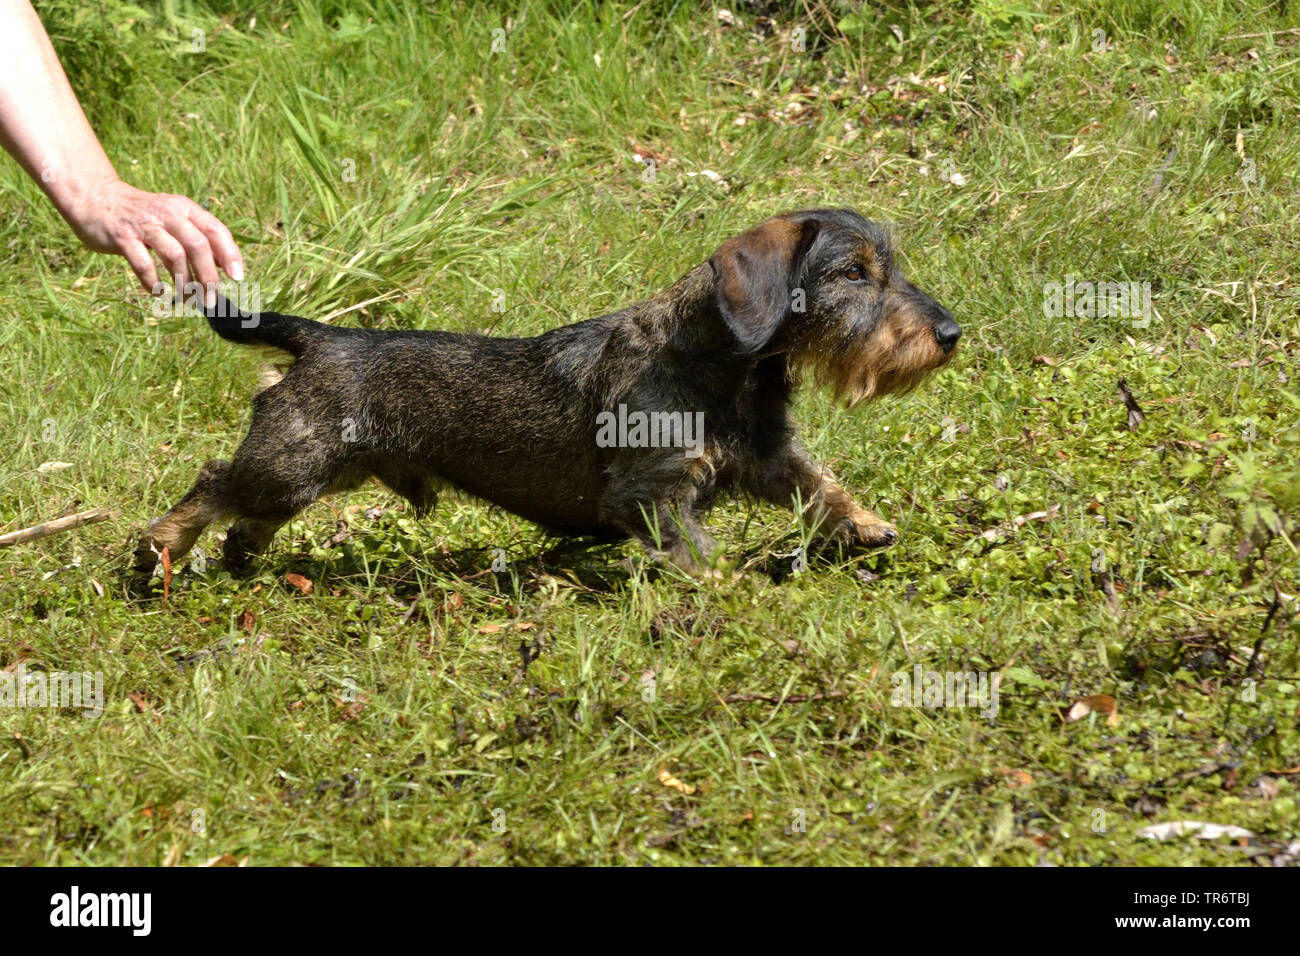 Teckel à poil dur, chien saucisse à poil dur, chien domestique (Canis lupus f. familiaris), lâcher prise, Allemagne Banque D'Images